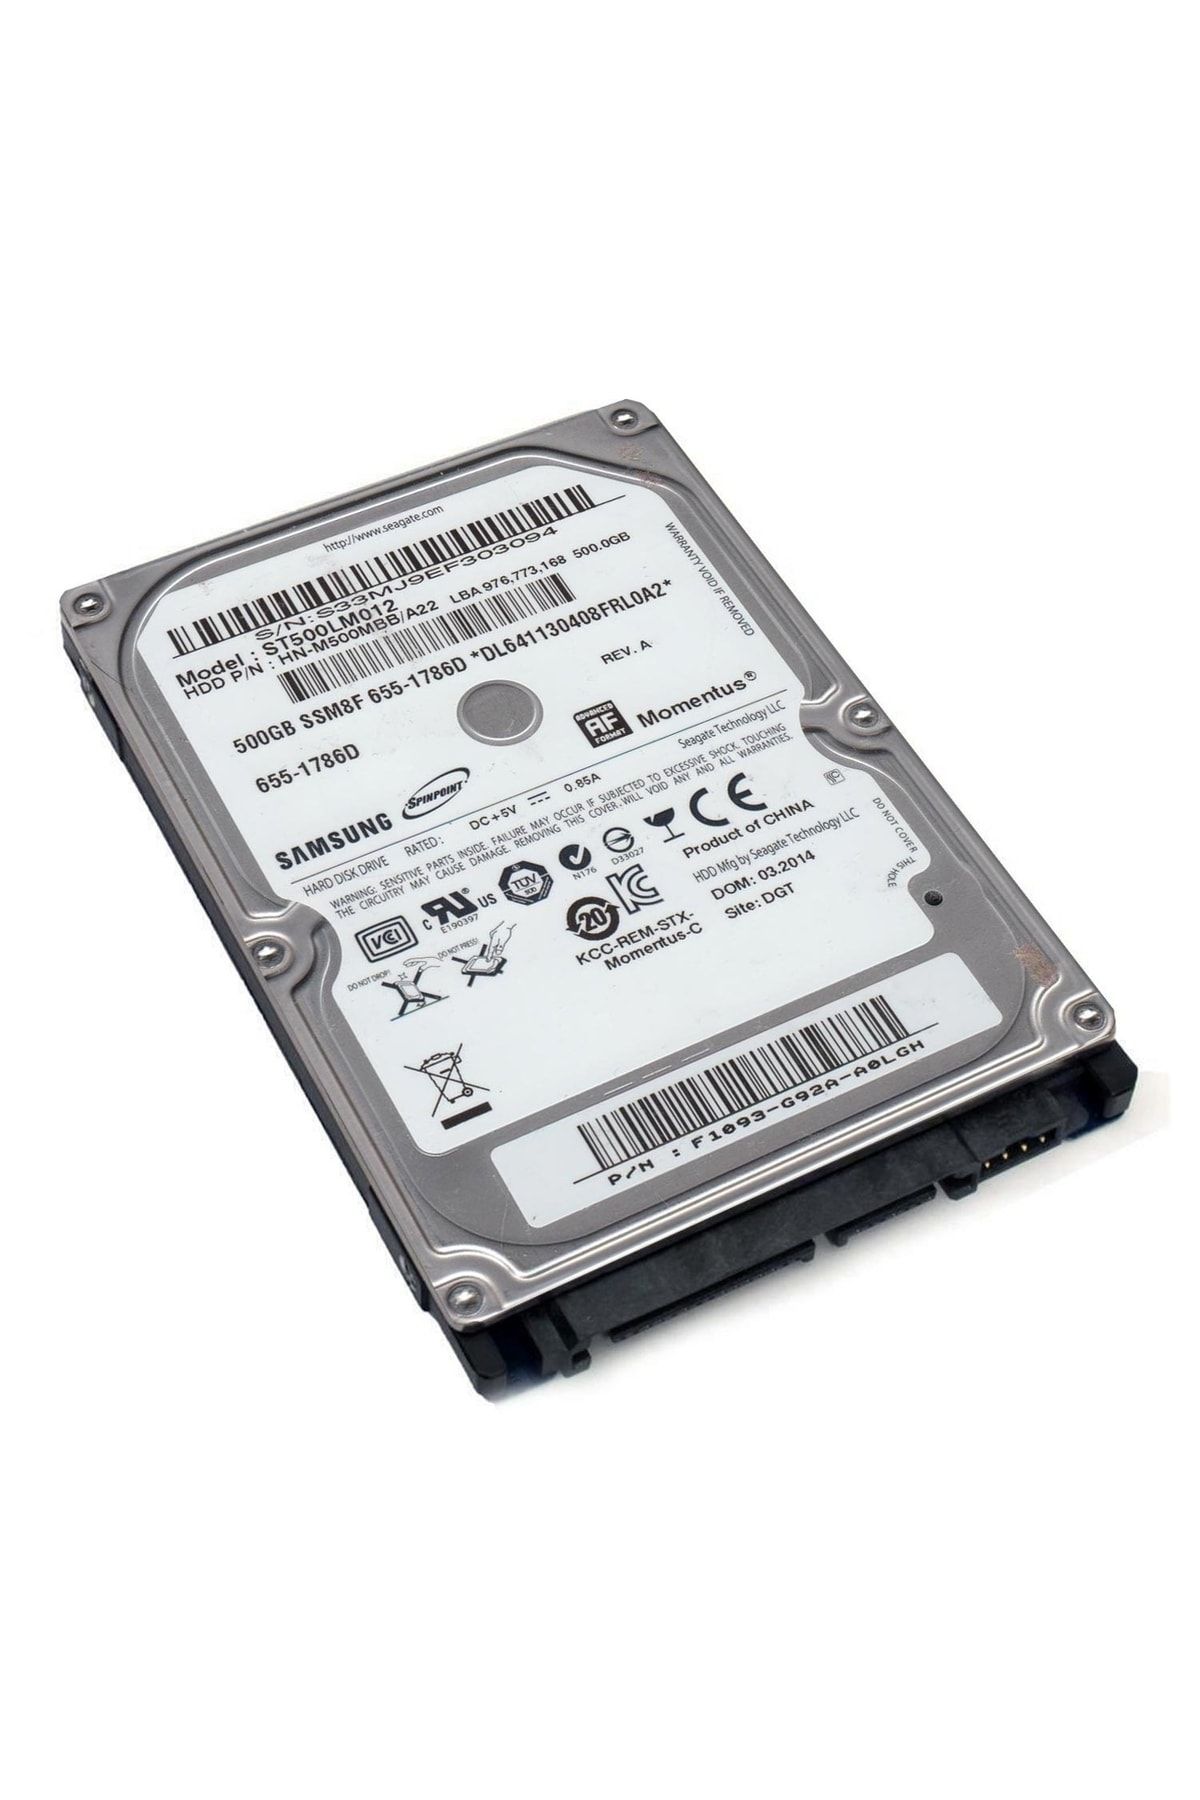 Samsung Harddisk 500gb 2.5 (dvr Kayıt Cihazı Uyumlu)